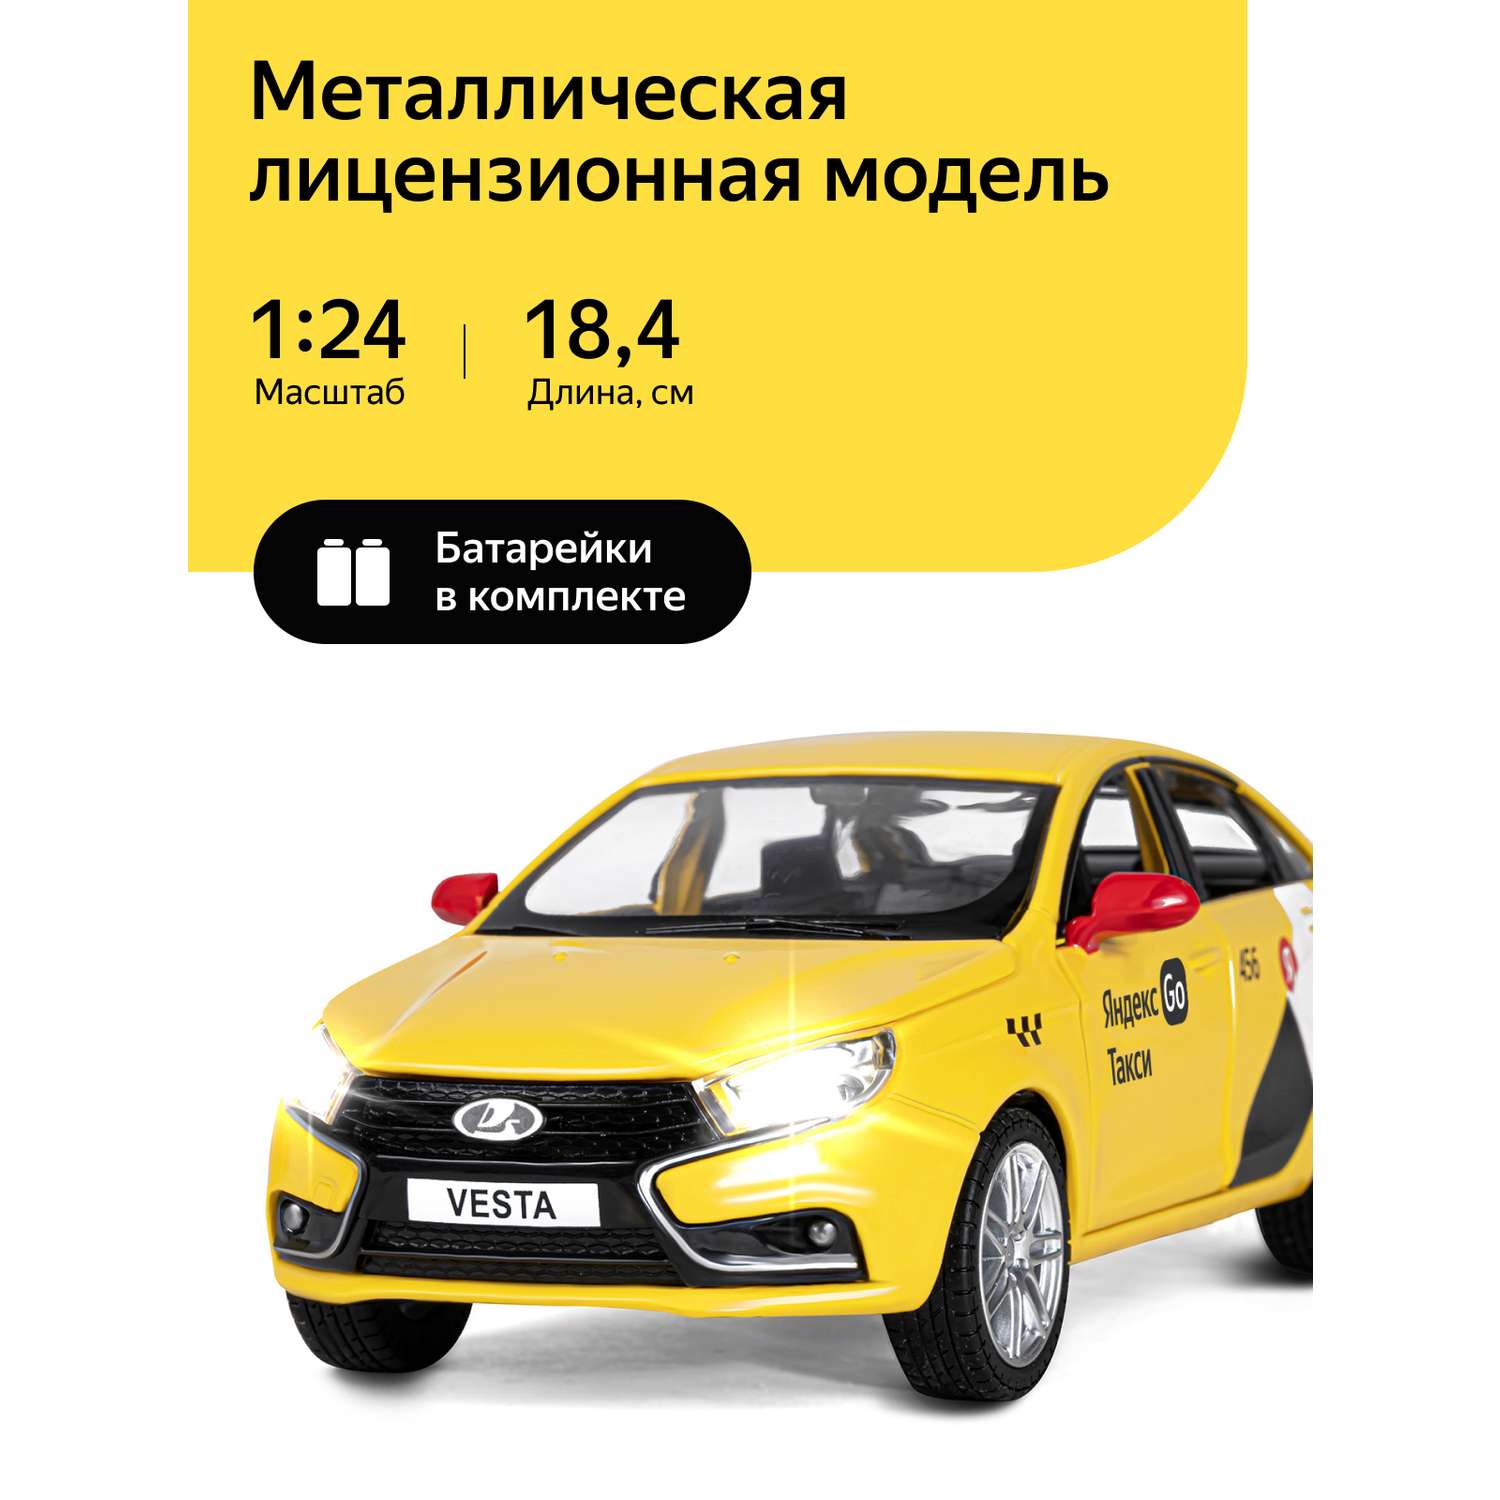 Машинка металлическая Яндекс GO игрушка детская 1:24 Lada Vesta желтый инерционная JB1251345/Яндекс GO - фото 1